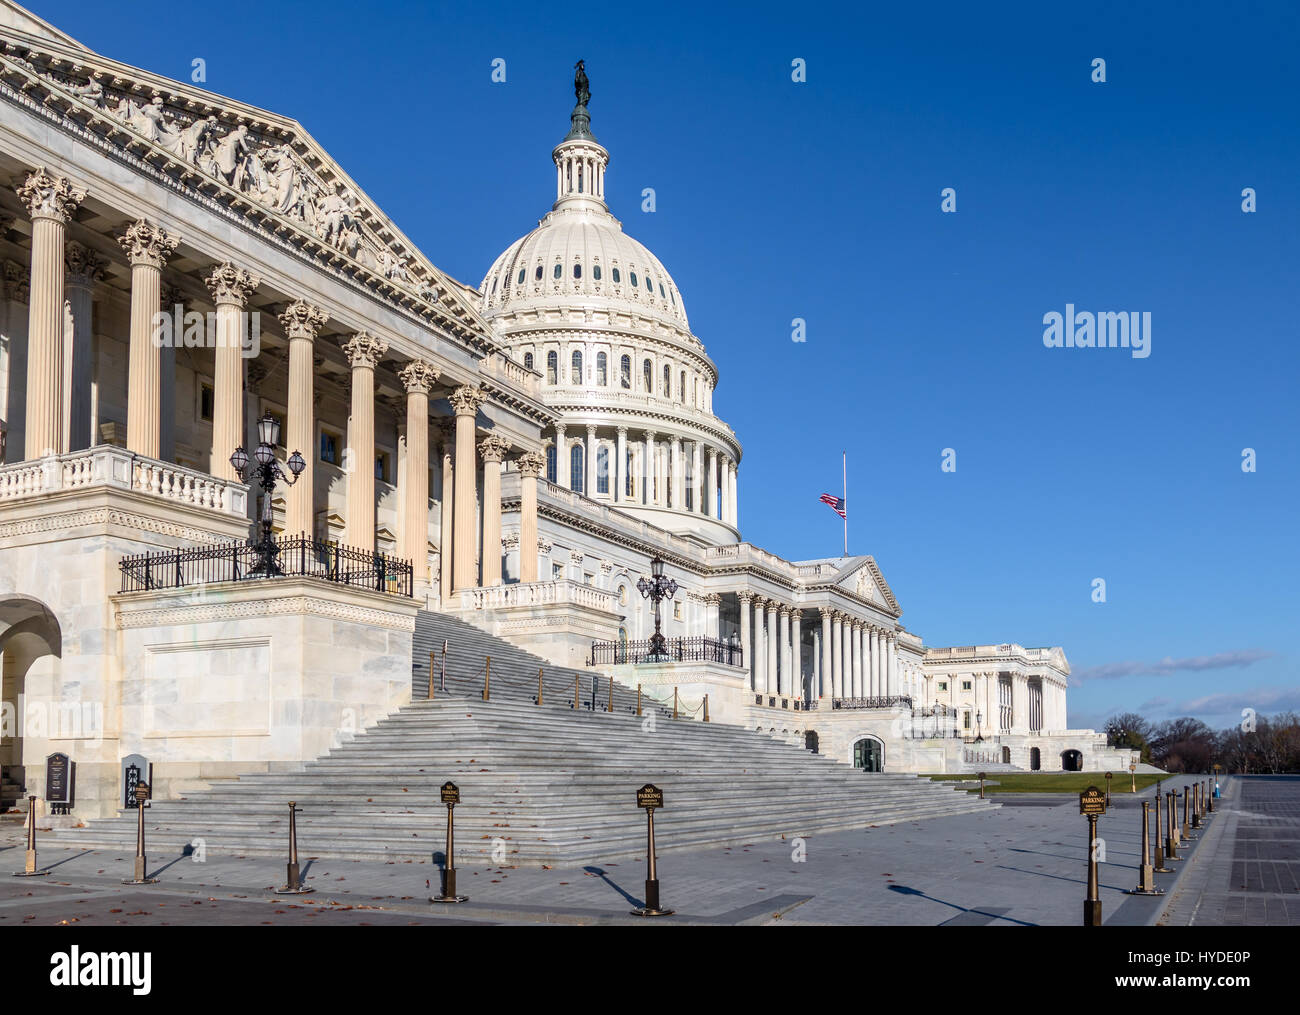 United States Capitol Building - Washington, DC, USA Stock Photo